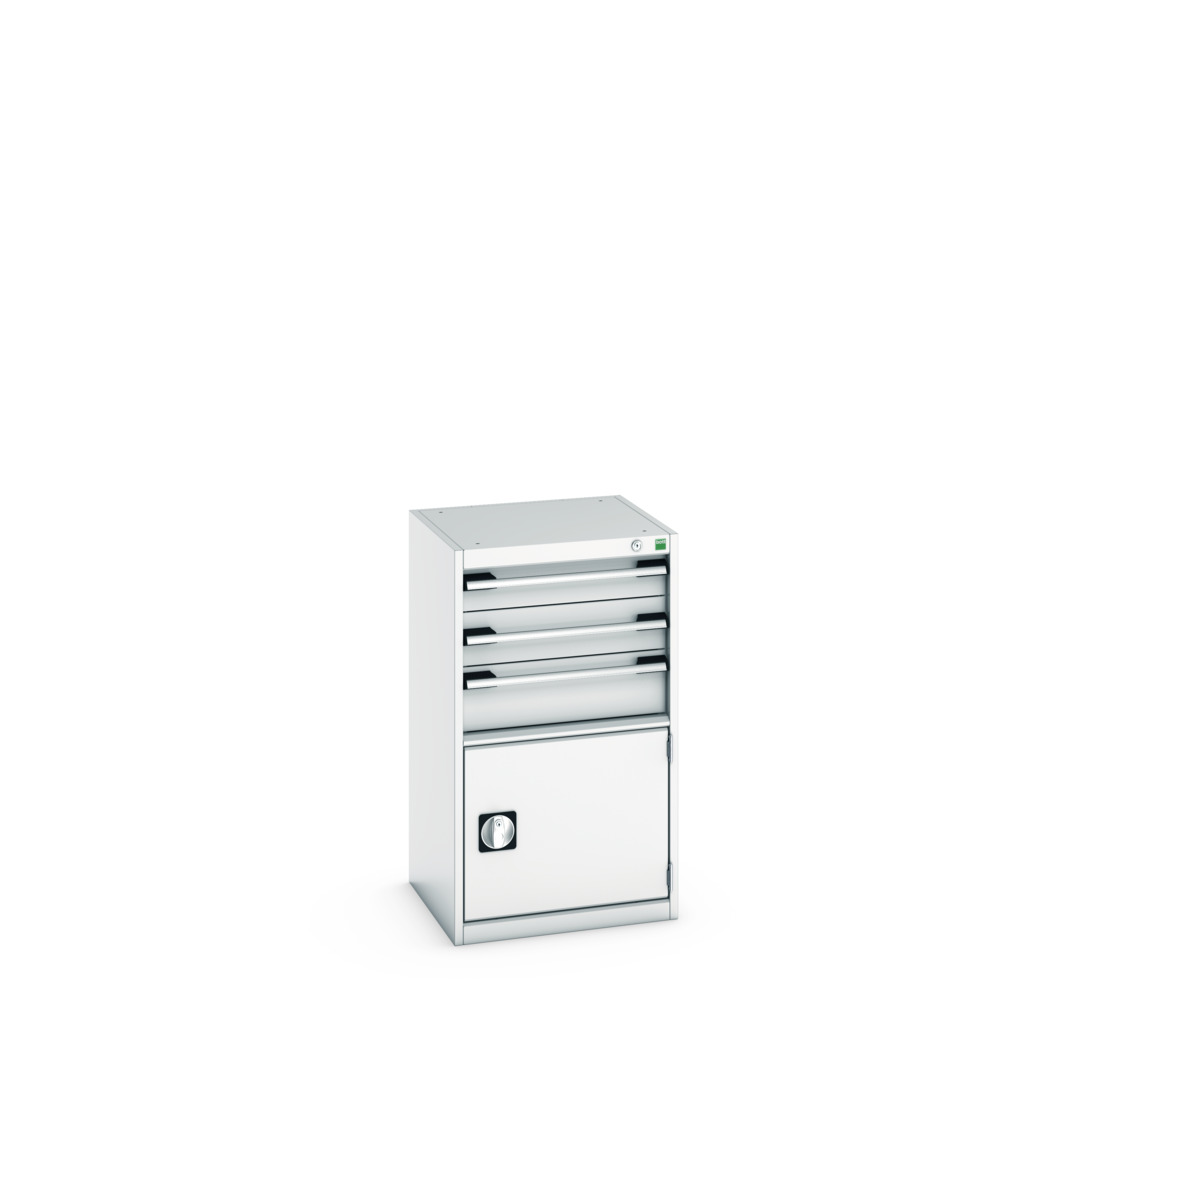 40010033.16V - cubio drawer-door cabinet